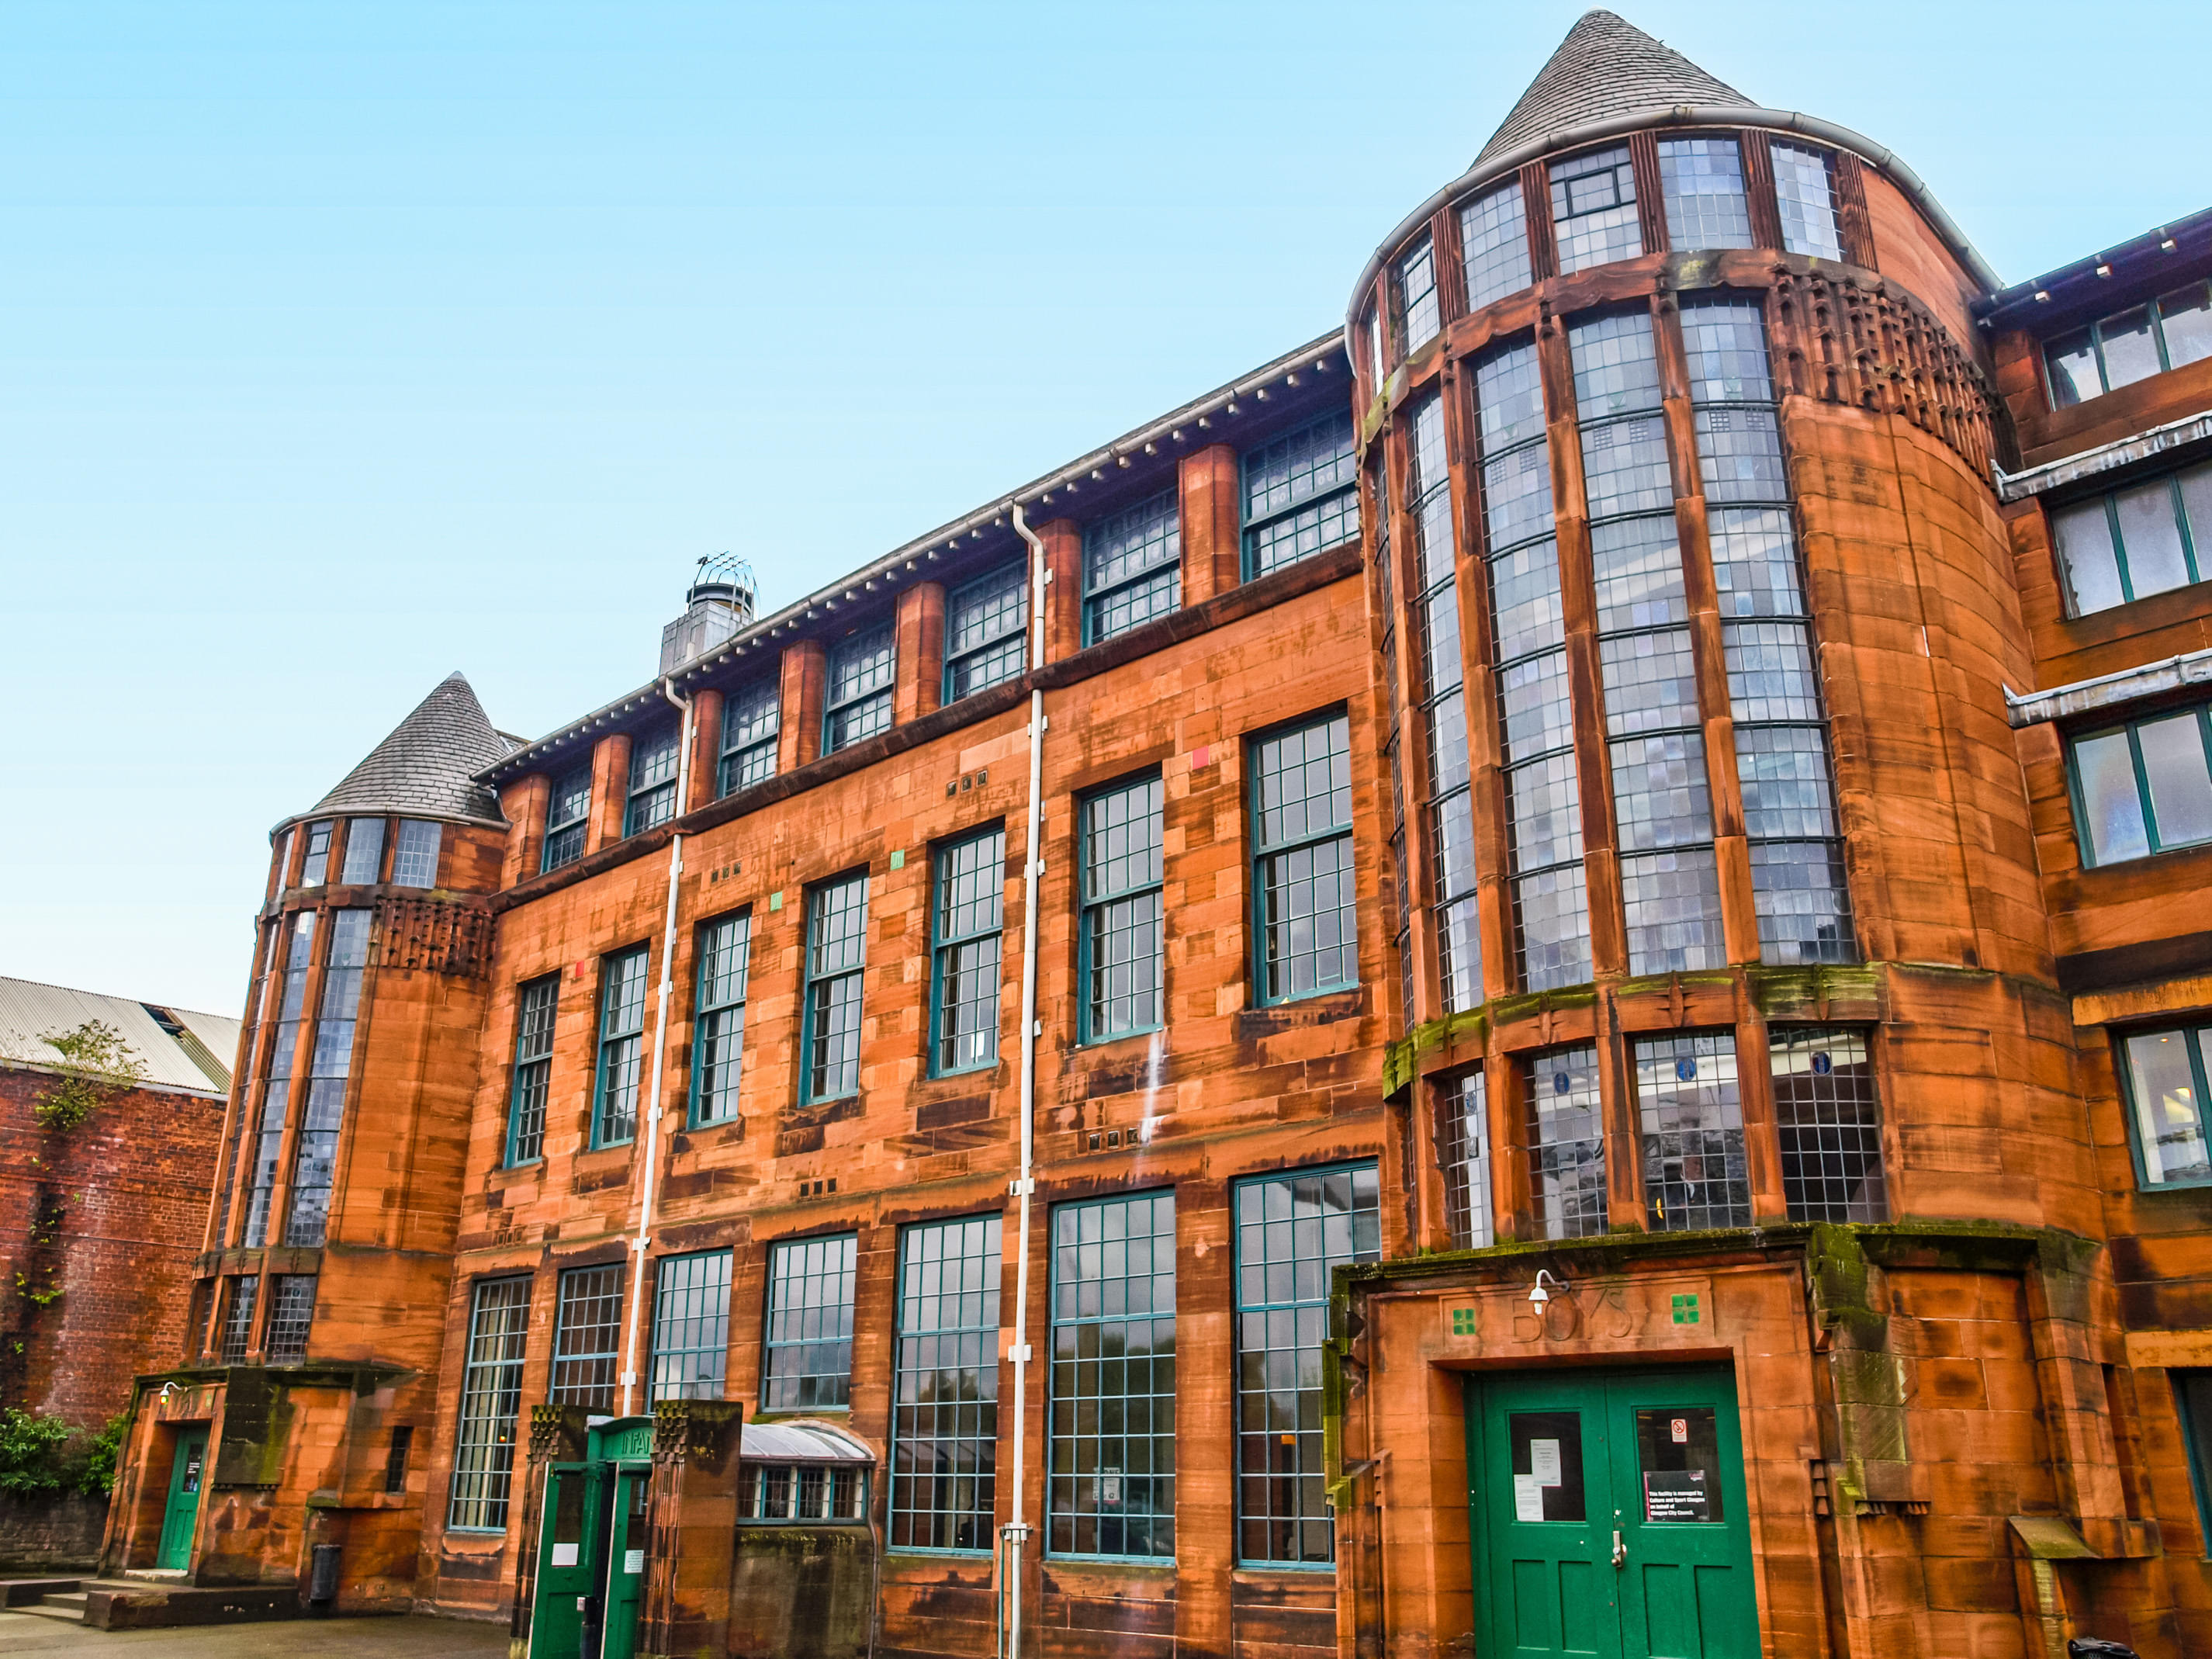 Scotland Street School Museum Overview